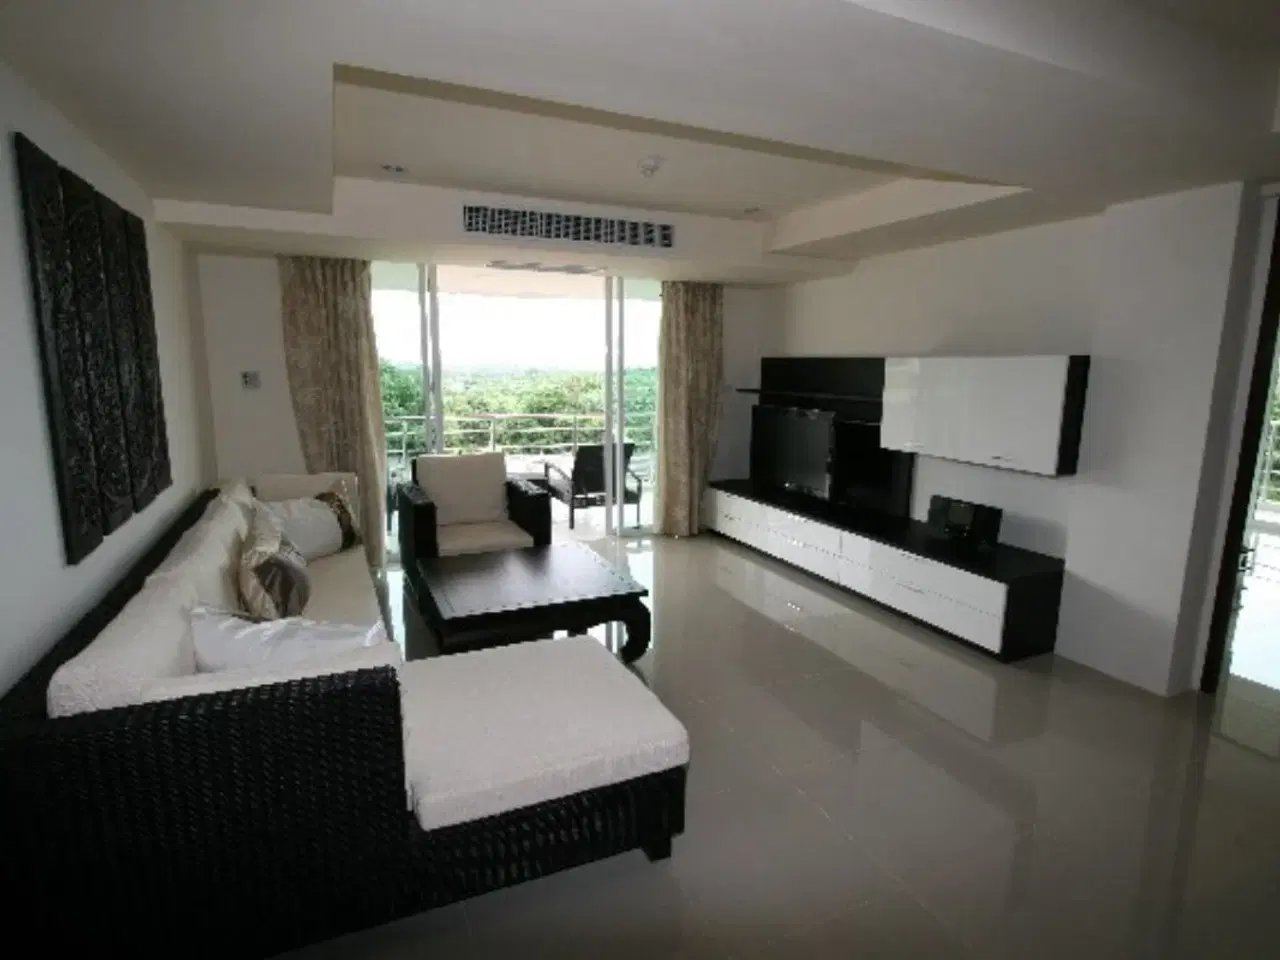 Billede 2 - Lej bolig i Hua Hin Thailand, stor hjørne lejlighed med havudsigt 2 balkoner, 3 soveværelser+ 2 bad